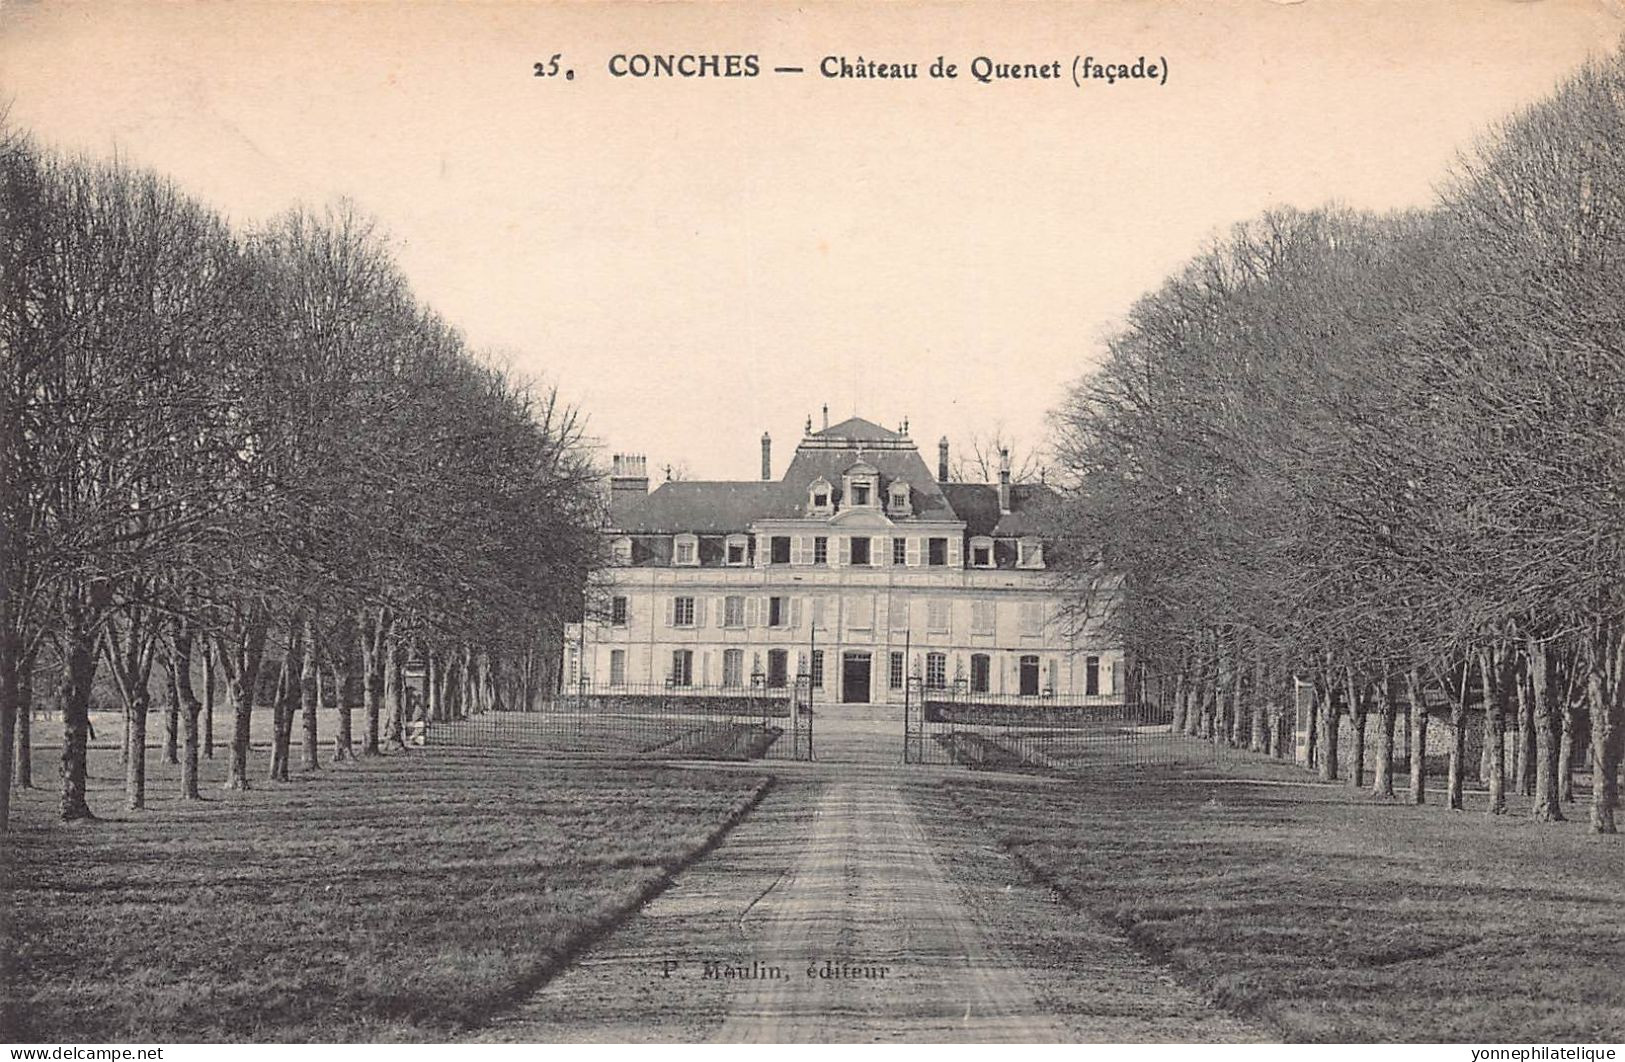 27 - EURE - Canton de CONCHES - collection de 61 cartes - LOT 27-31G